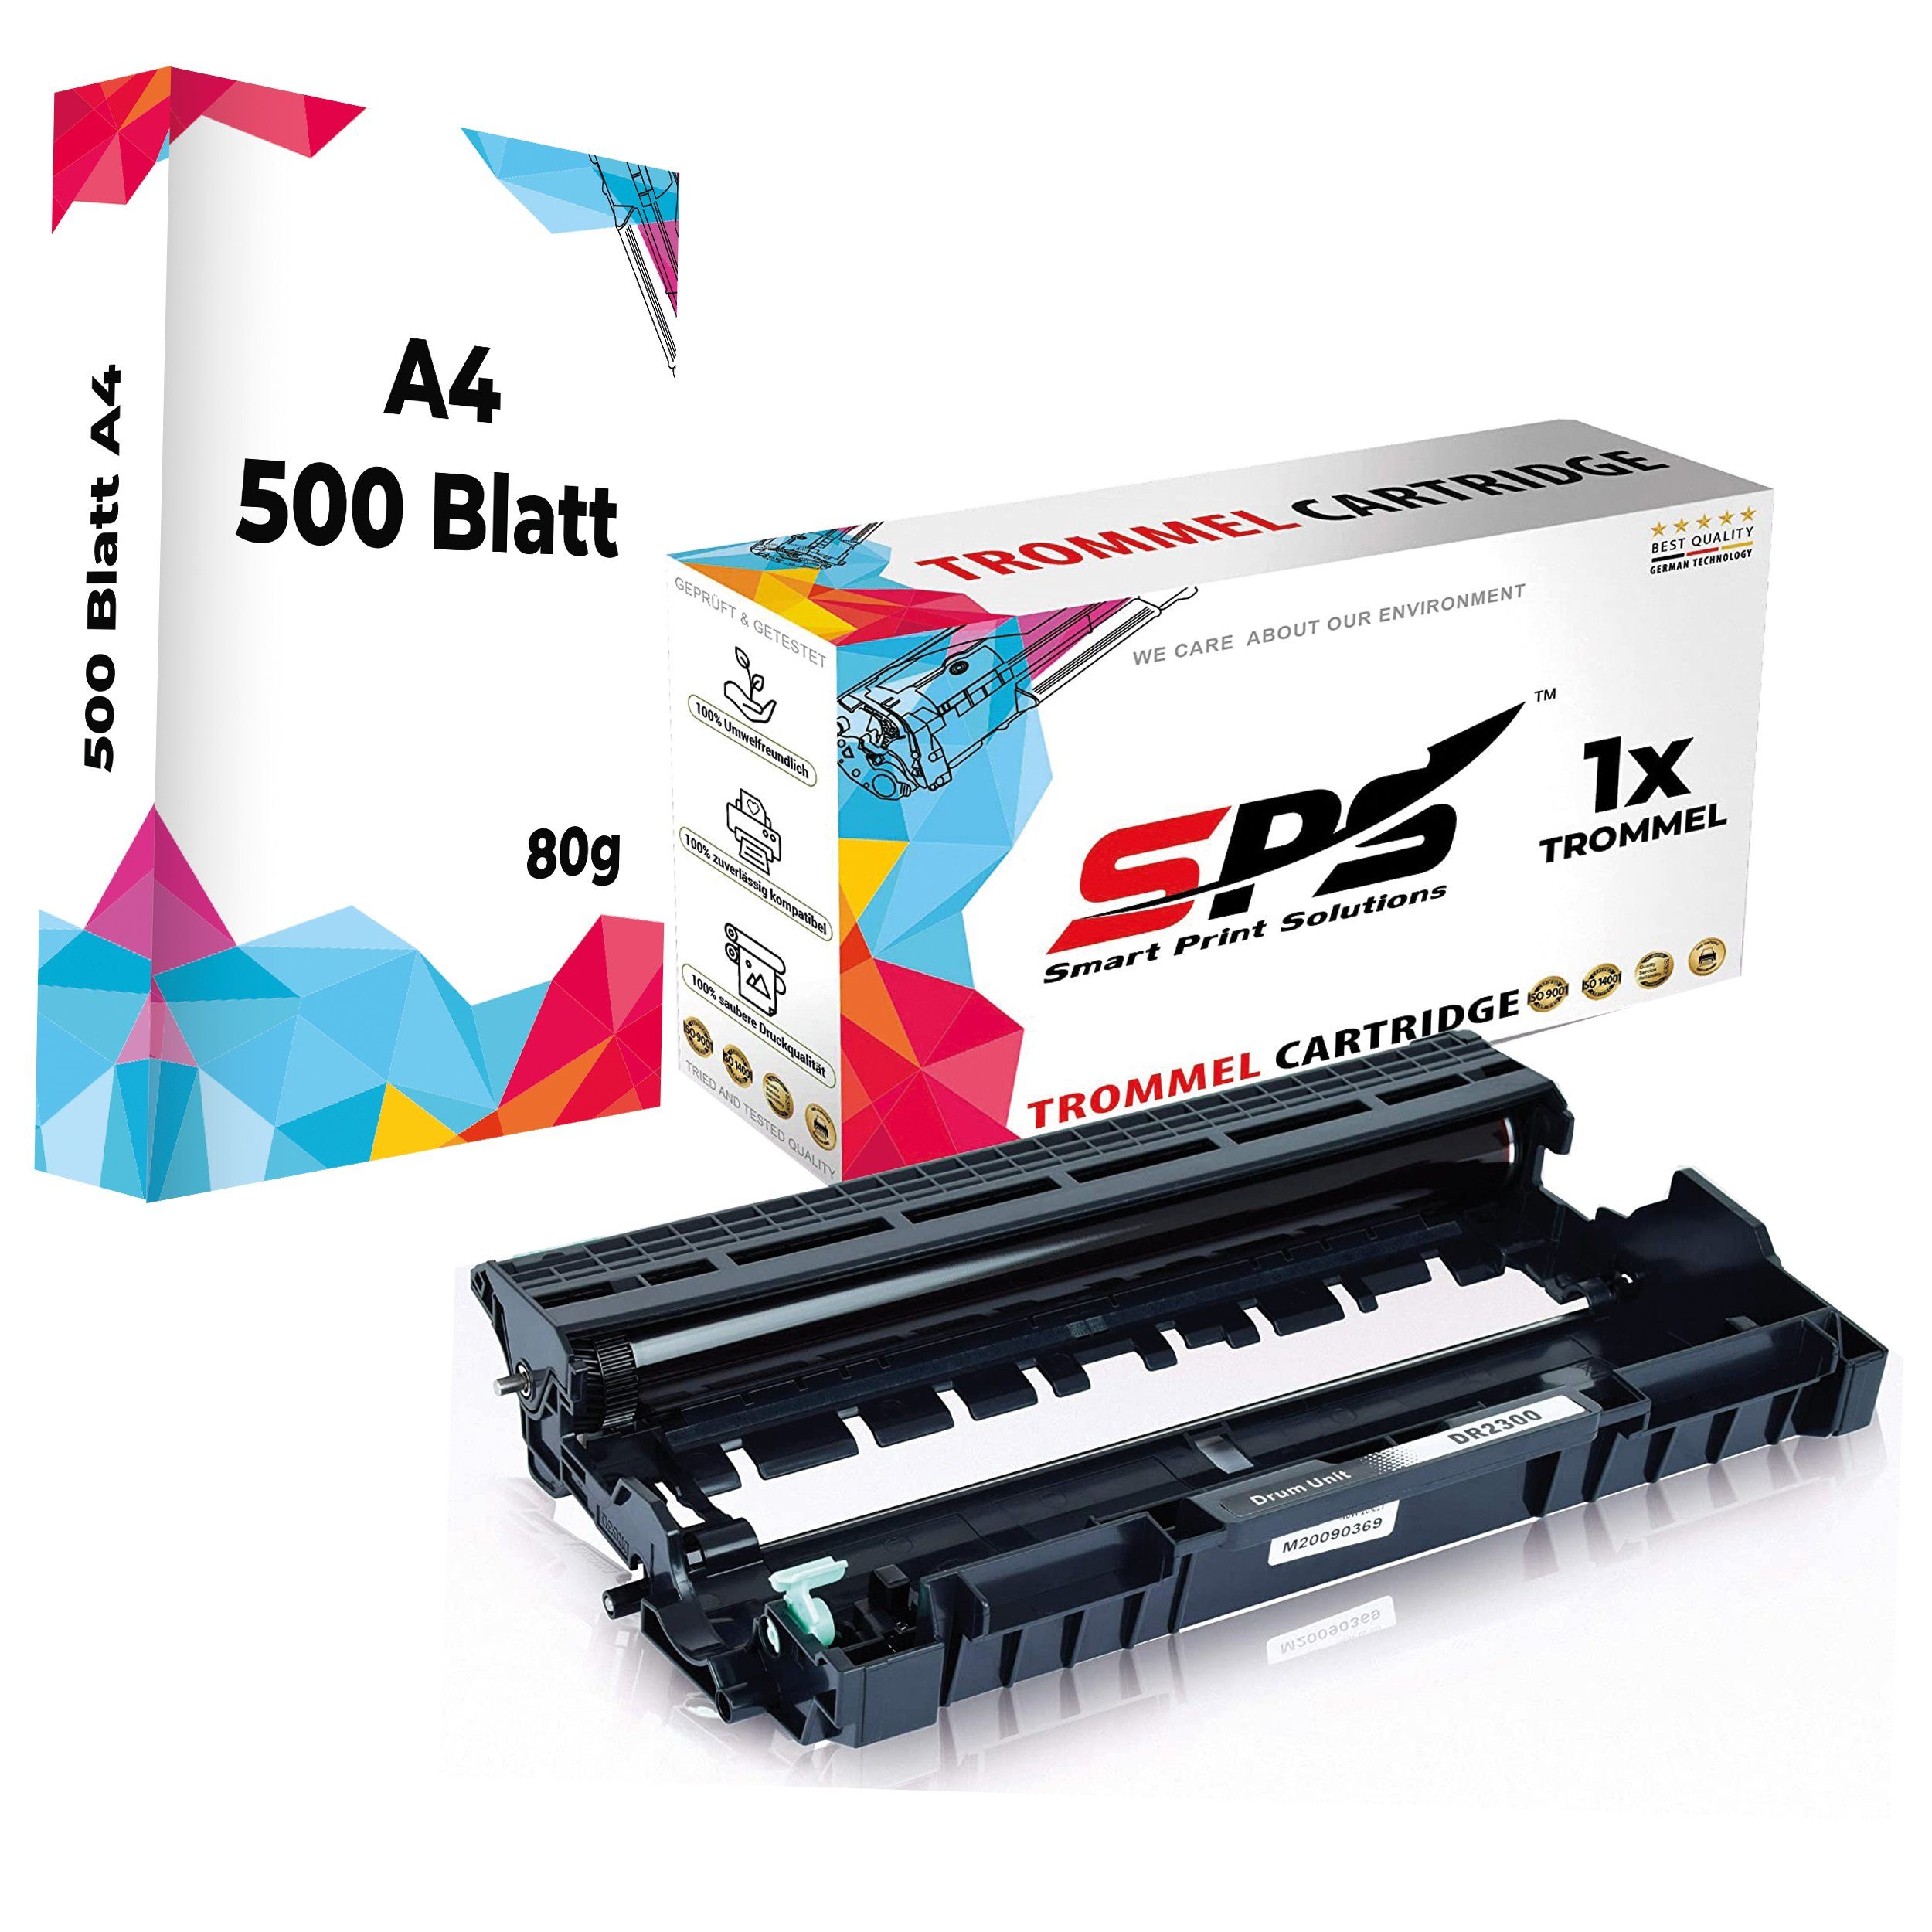 SPS Tonerkartusche 1x Trommel DR2300 DR-2300 Kompatibel für Brother, (1er Trommel Set mit DIN A4 Druckerpapier, 1x Trommel)